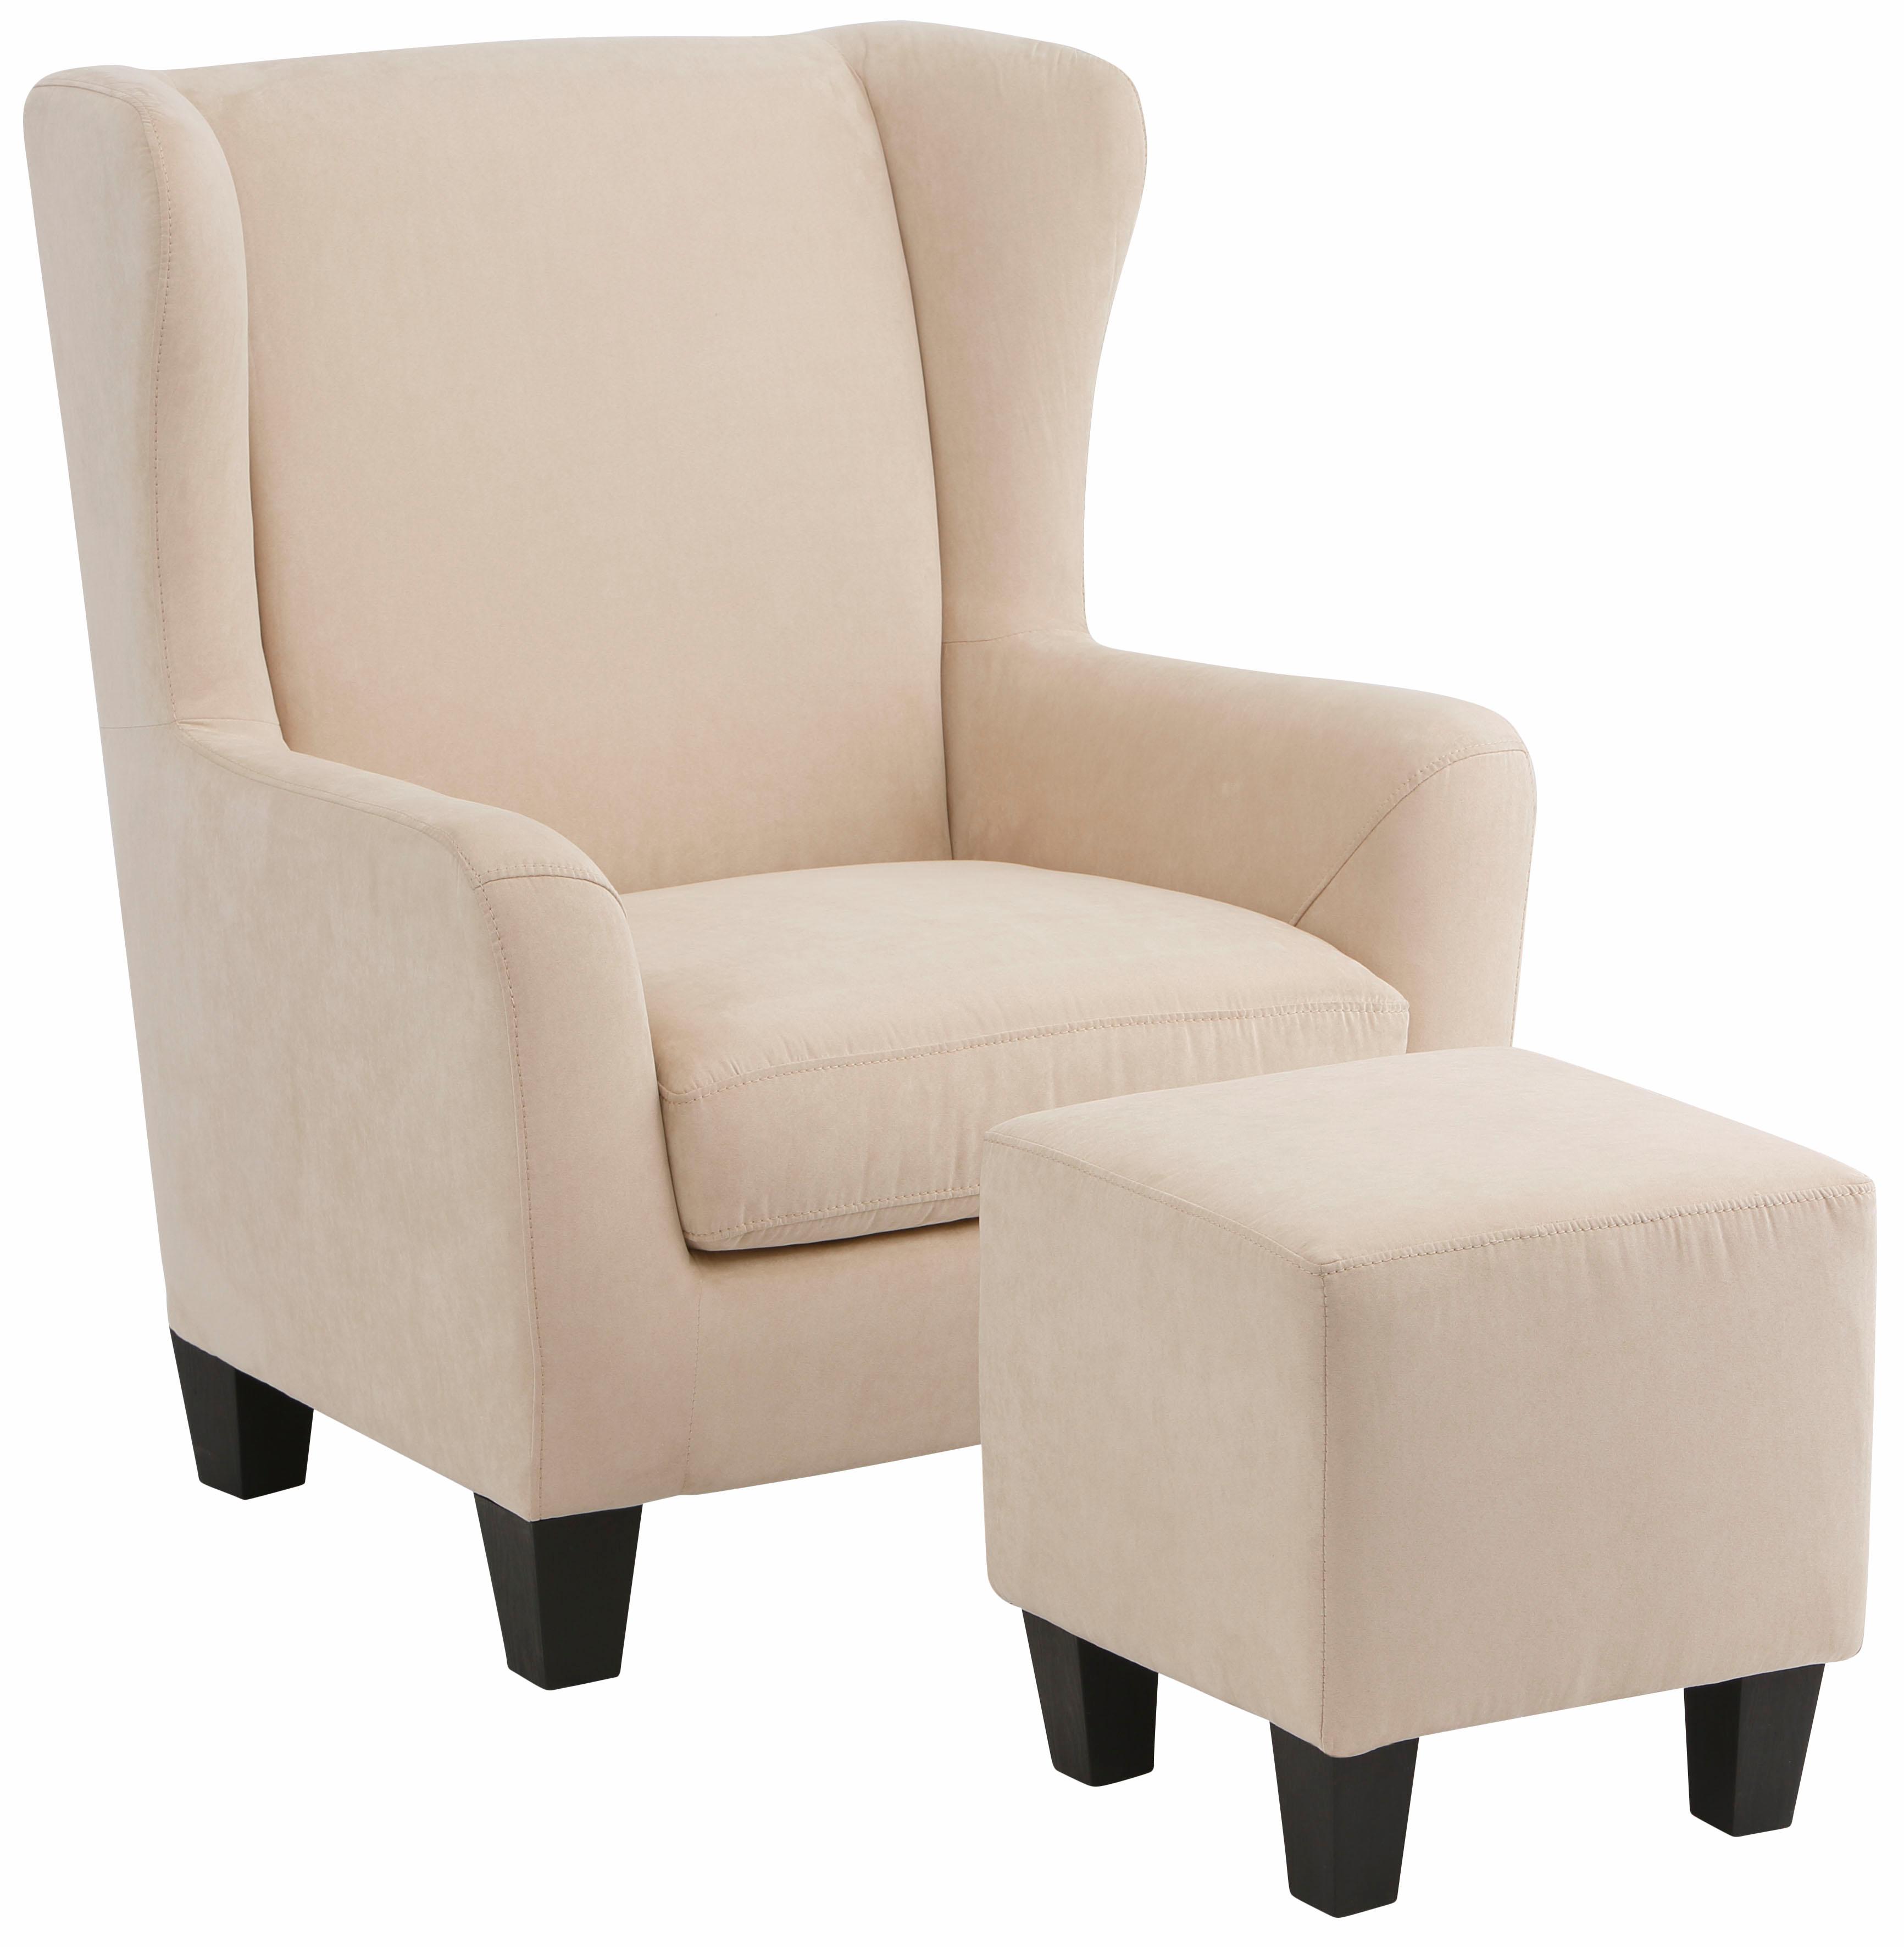 Home affaire Sessel Chilly, (Set, 2 St., bestehend aus Sessel und Hocker), mit bequemer Federkern-Polsterung, in drei unterschiedlichen Bezugsqualitäten erhältlich, Sitzhöhe 44 cm